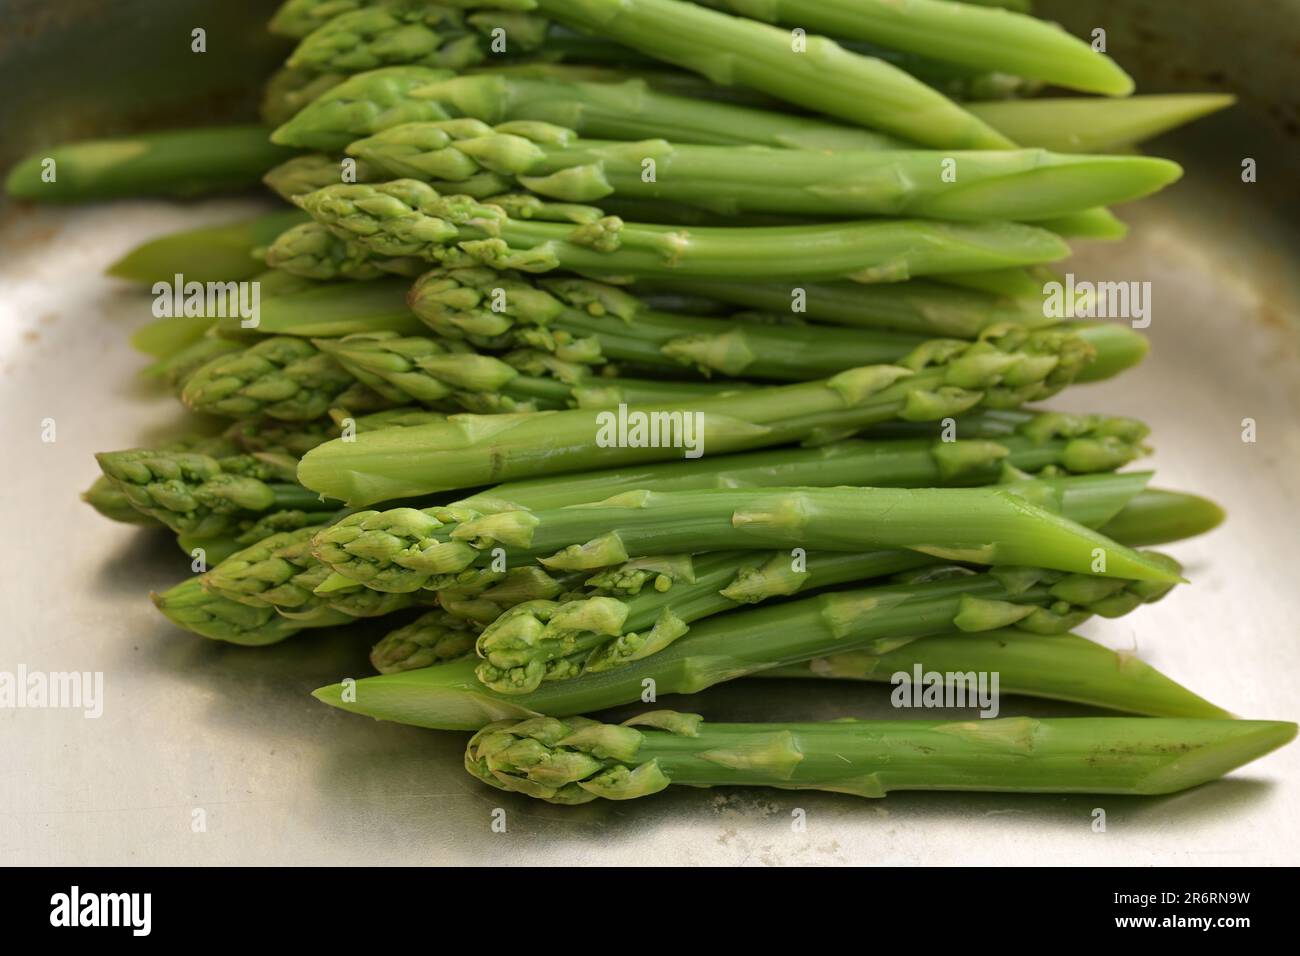 Asparagi verdi sbolliti in un contenitore metallico, cucina con verdure di stagione sane, focus selezionato, profondità di campo ristretta Foto Stock